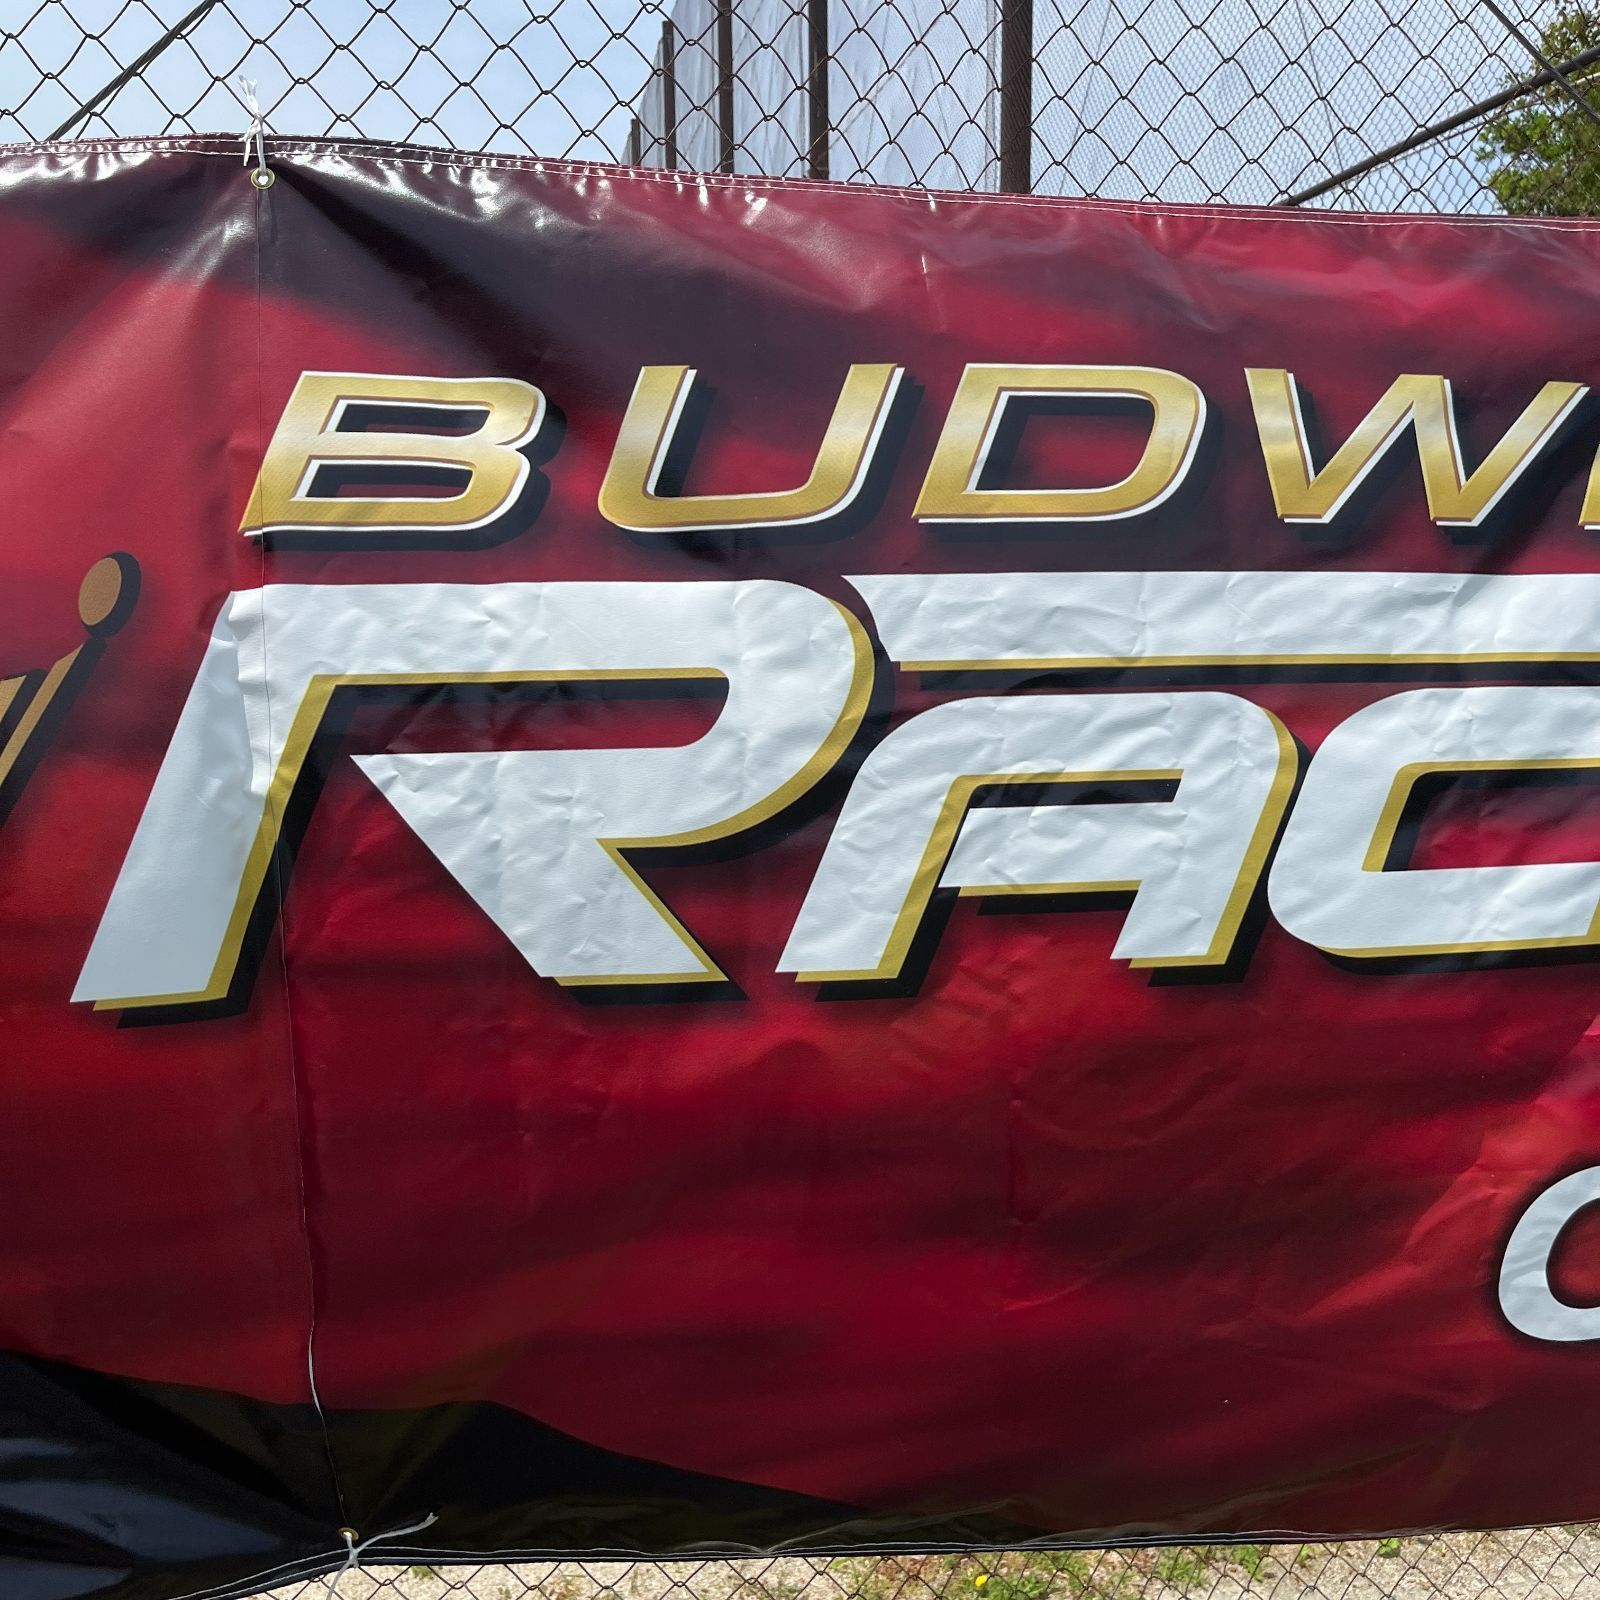 バナー / 横断幕】2005年製 6.0m x 1.2m Budweiser (バドワイザー) Racing Open It Up INDIANA  アドバタイジング プロモーション 巨大 キングオブビール - メルカリ